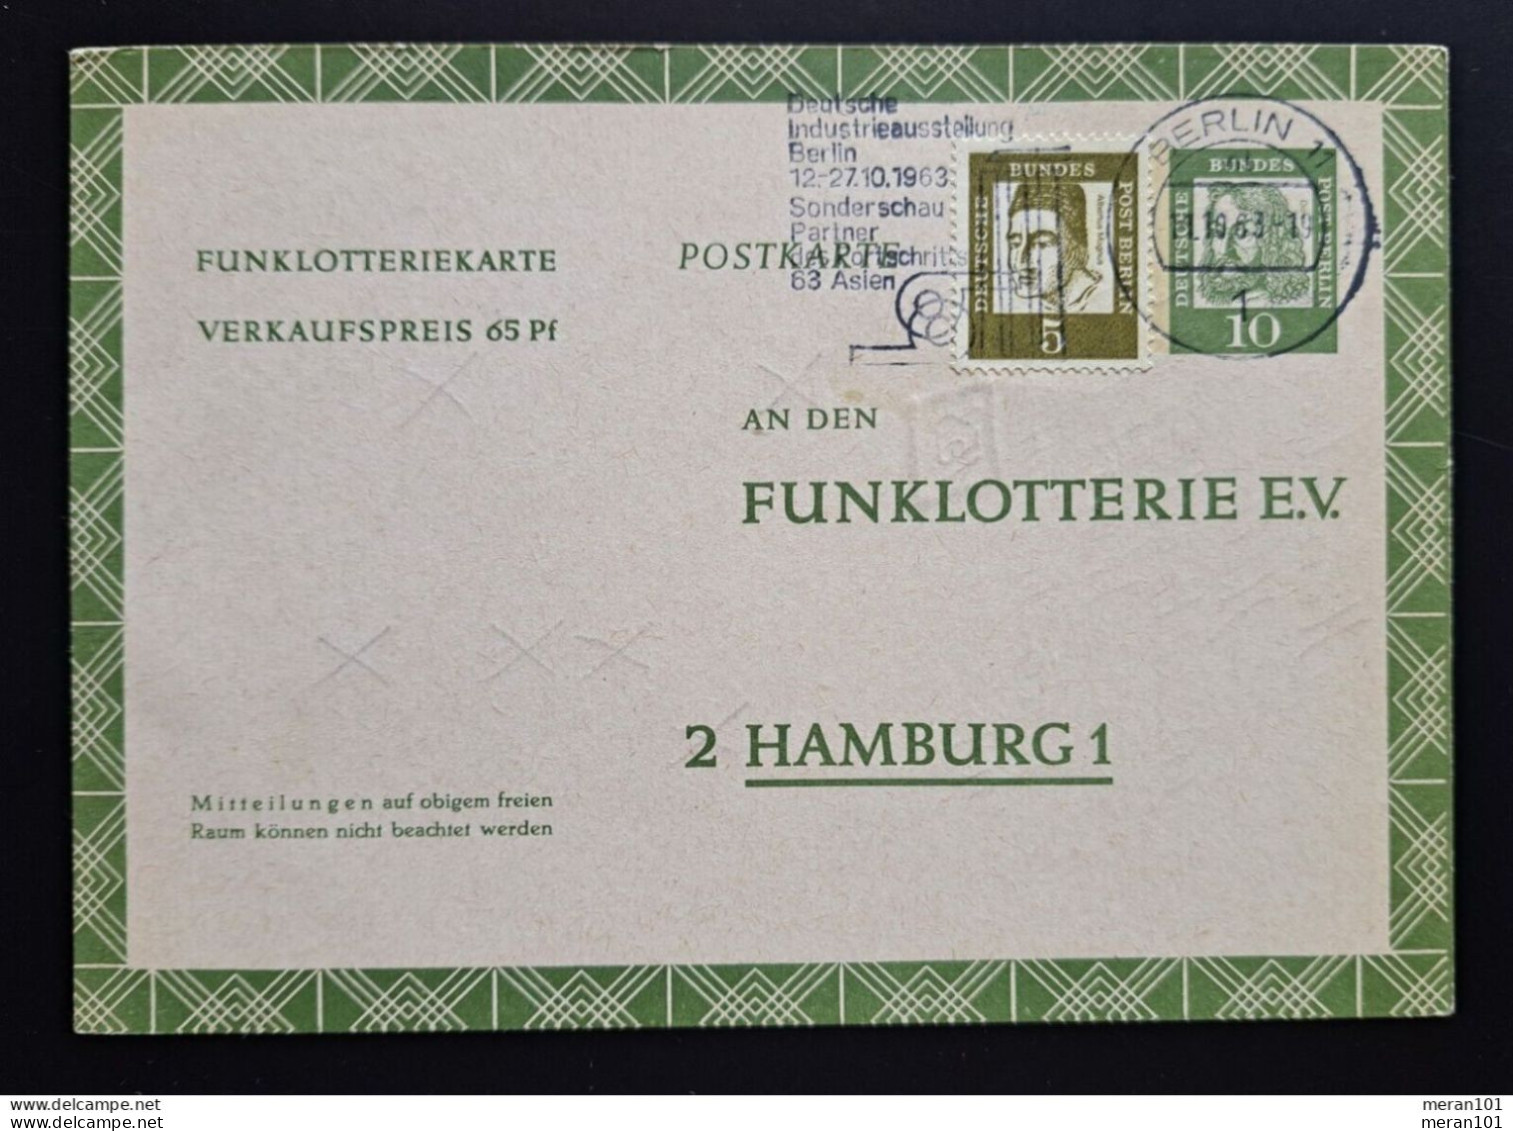 Berlin 1963, Postkarte Funklotterie FP 6 Berlin "Albrecht Dürer" - Postcards - Used